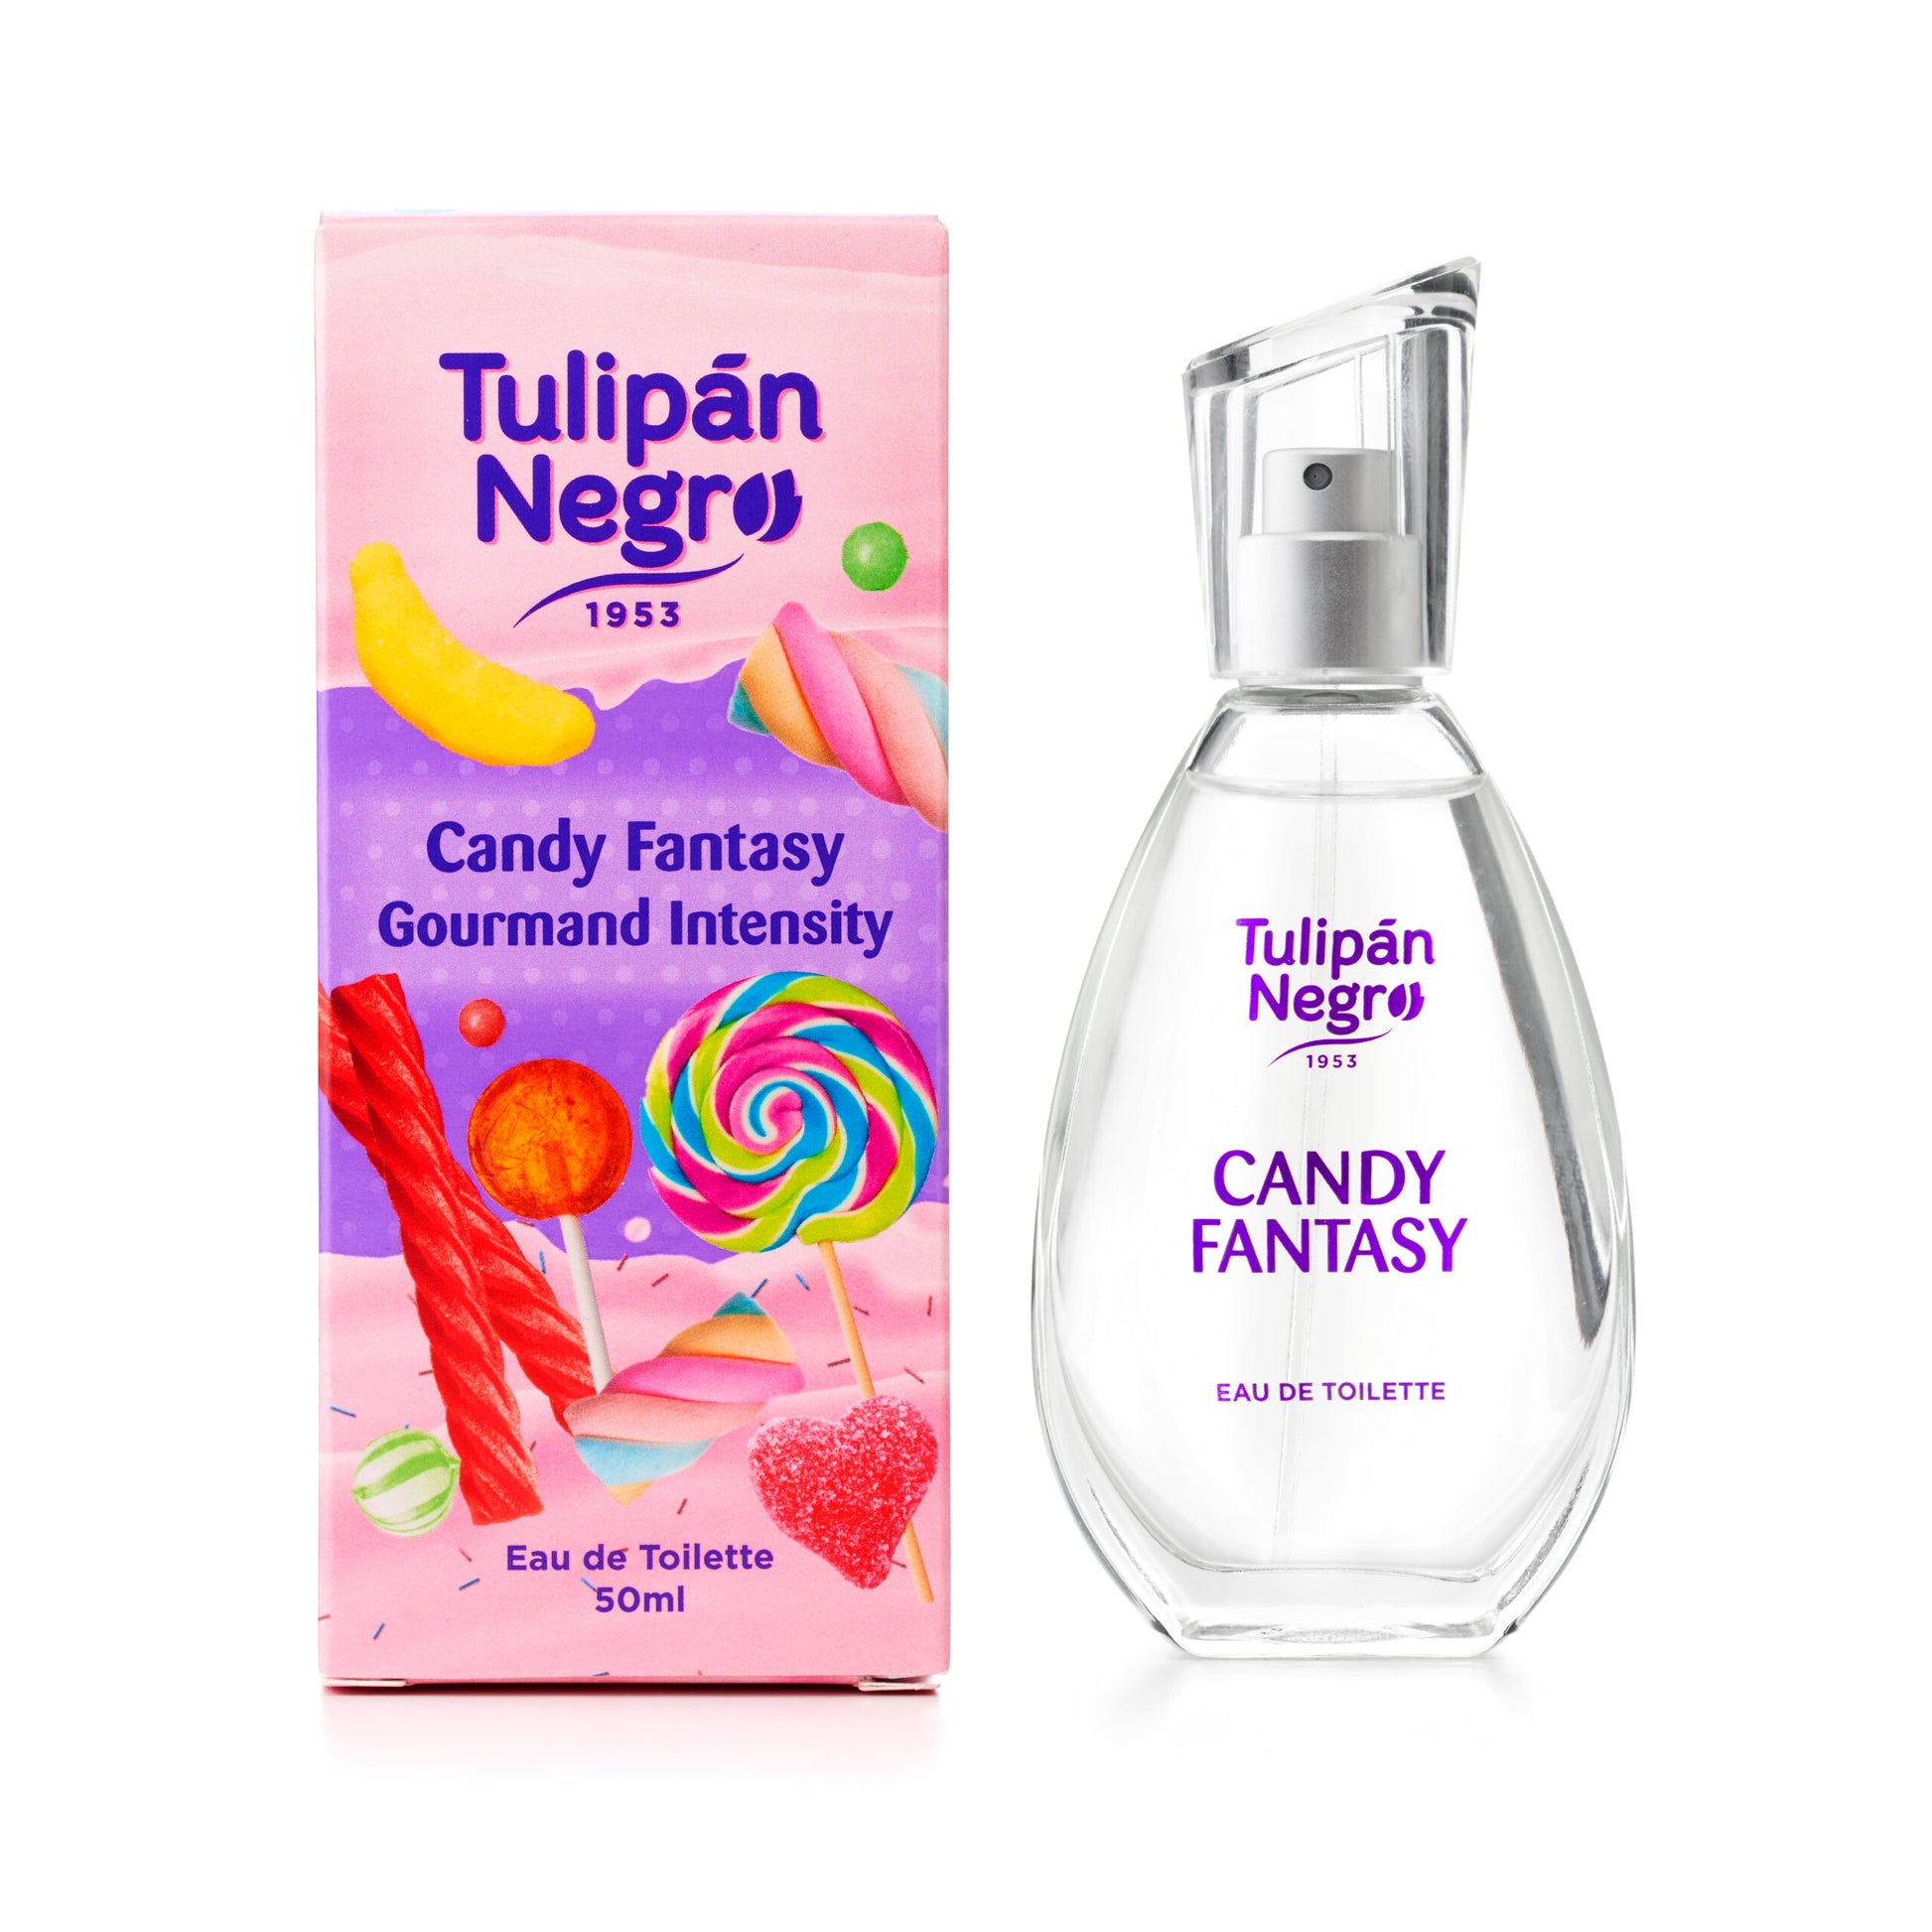 Tulipán Negro Eau de Cologne Candy Fantasy 50ml